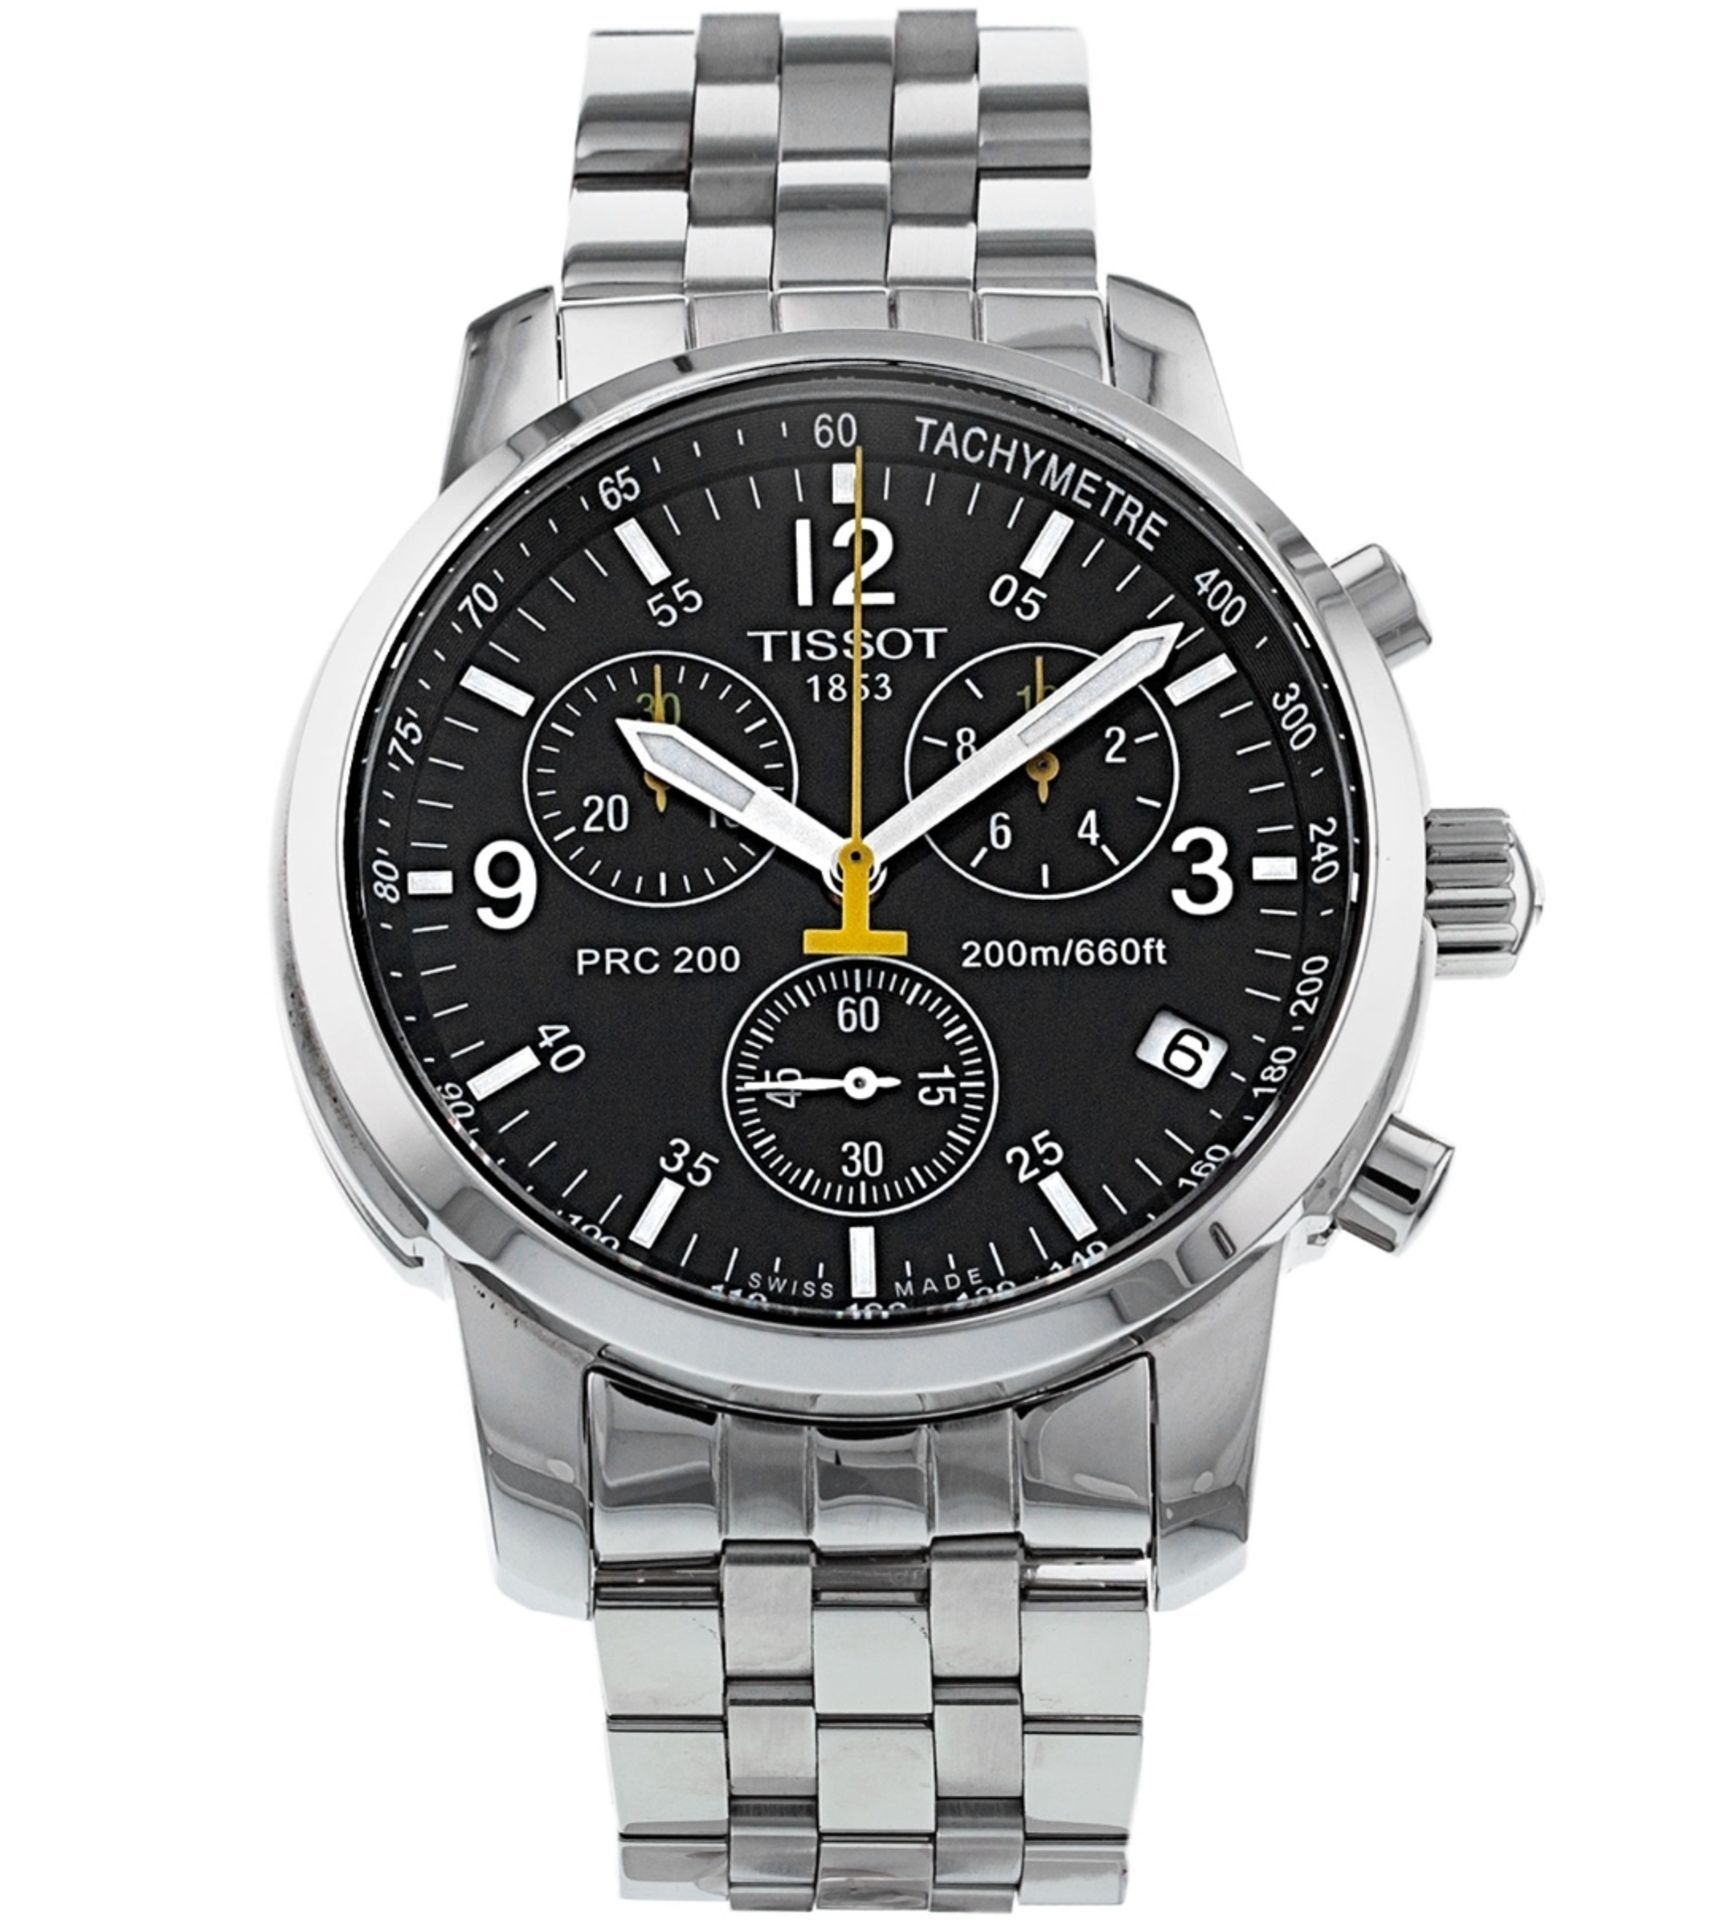 Tissot T17.1.586.52 PRC 200 Men's Chronograph Quartz Watch - Image 2 of 11